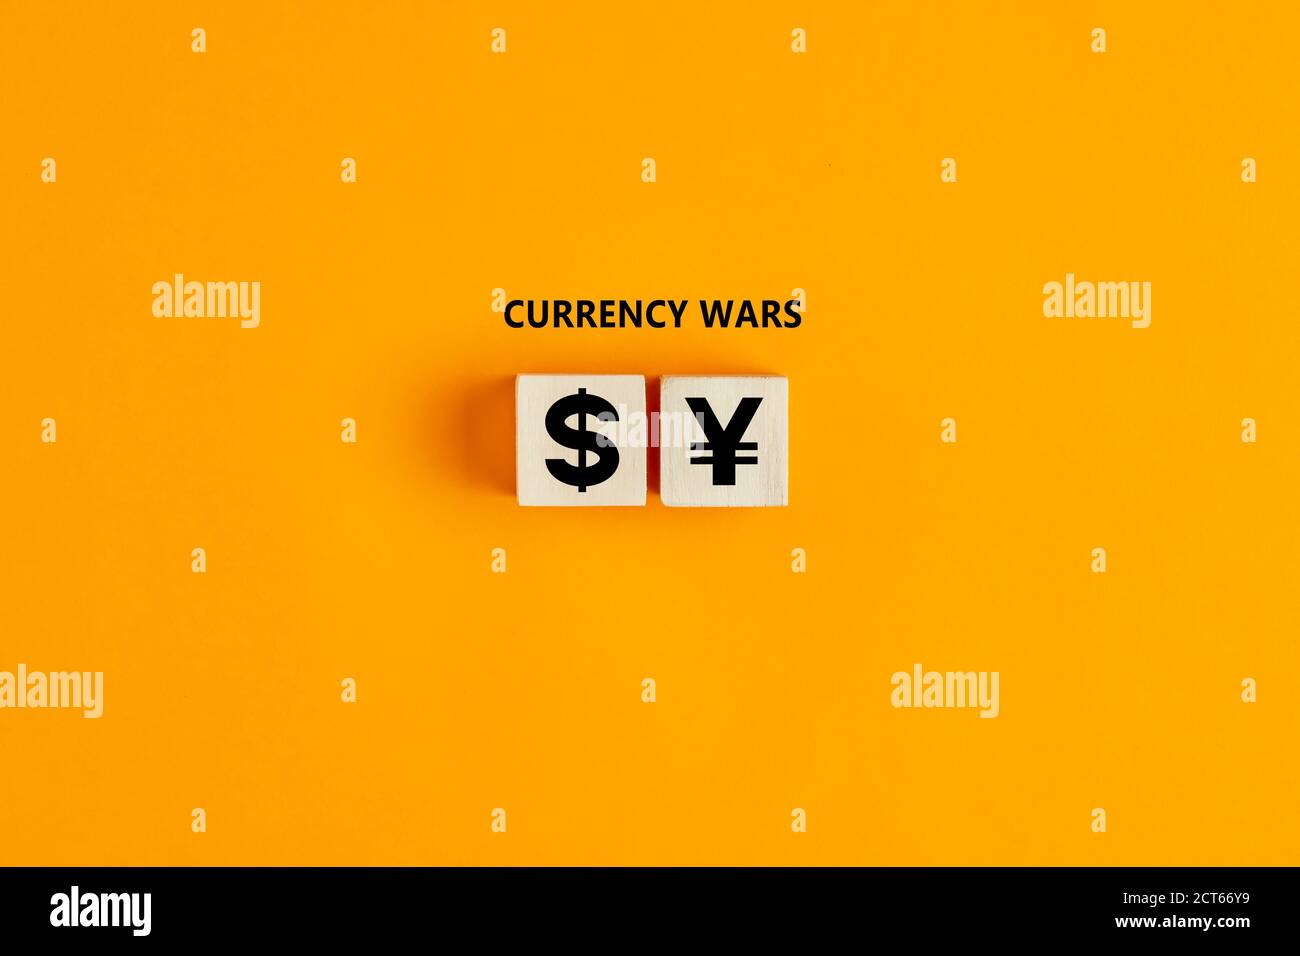 Dollar und Yuan oder Yen Währungssymbole auf Holzblöcken. Währung oder Handelskriege zwischen den vereinigten Staaten und china oder japan Konzept. Stockfoto